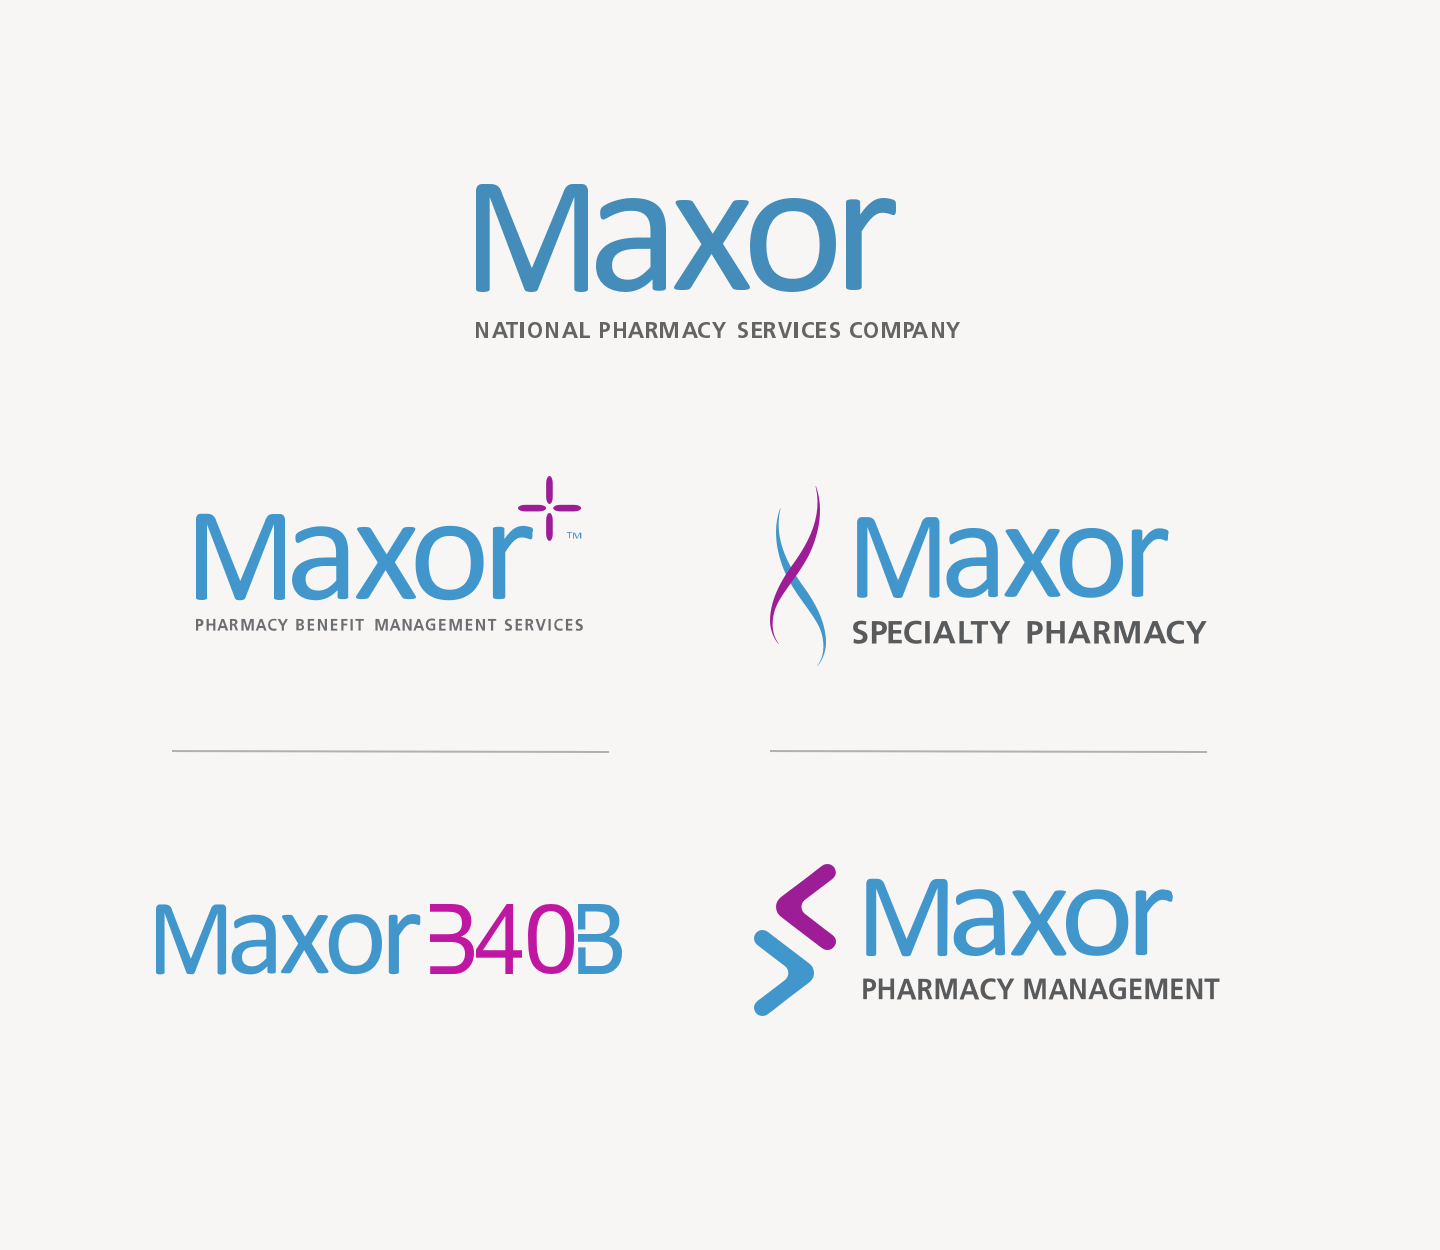 Maxor division logos